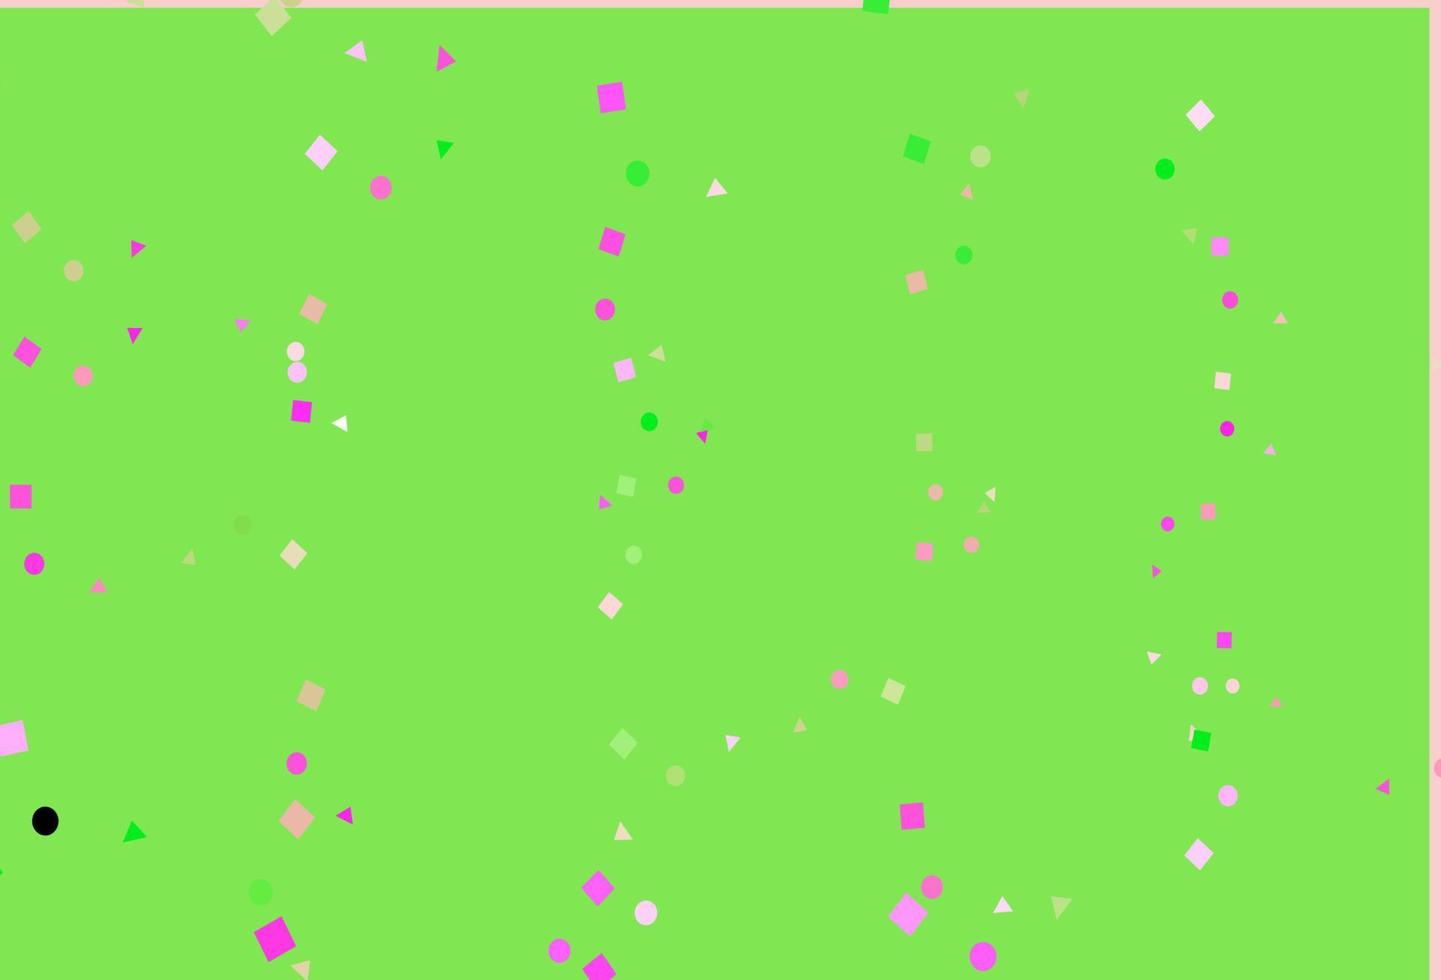 modelo de vetor rosa claro, verde com cristais, círculos, quadrados.